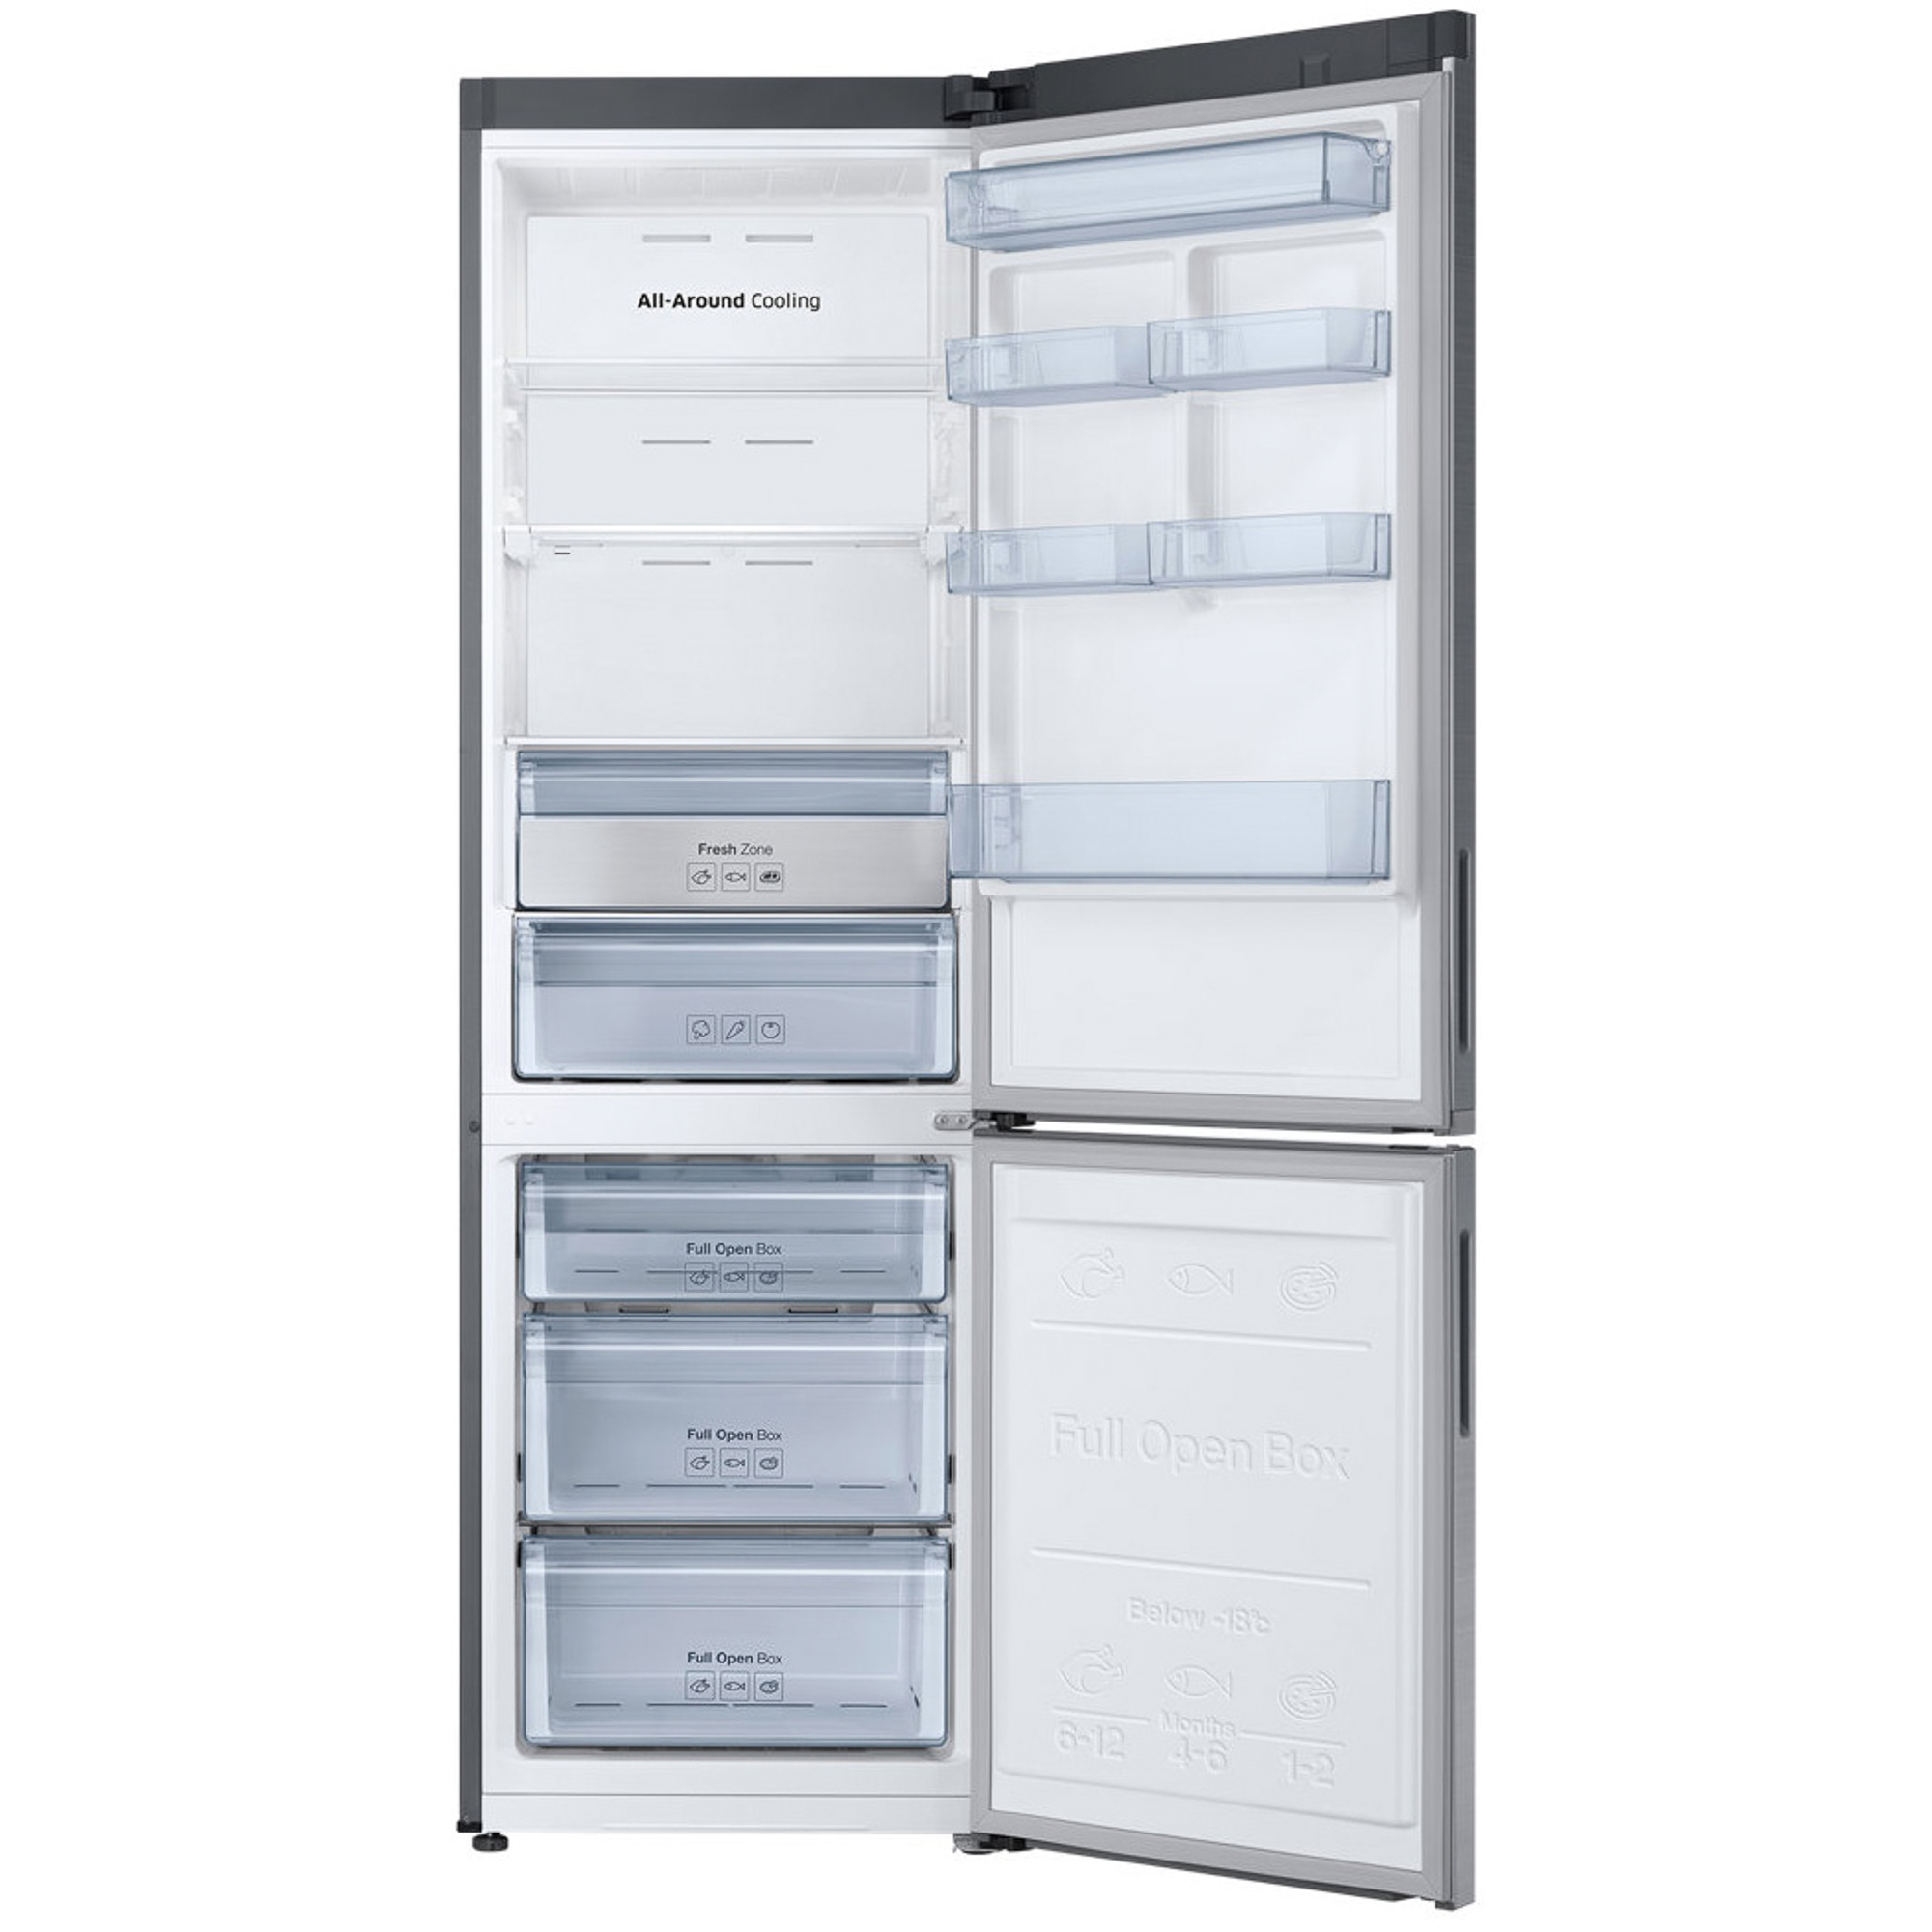 Холодильник Samsung RB34K6220S4 Silver, цвет серебристый RB34K6220S4/WT - фото 2